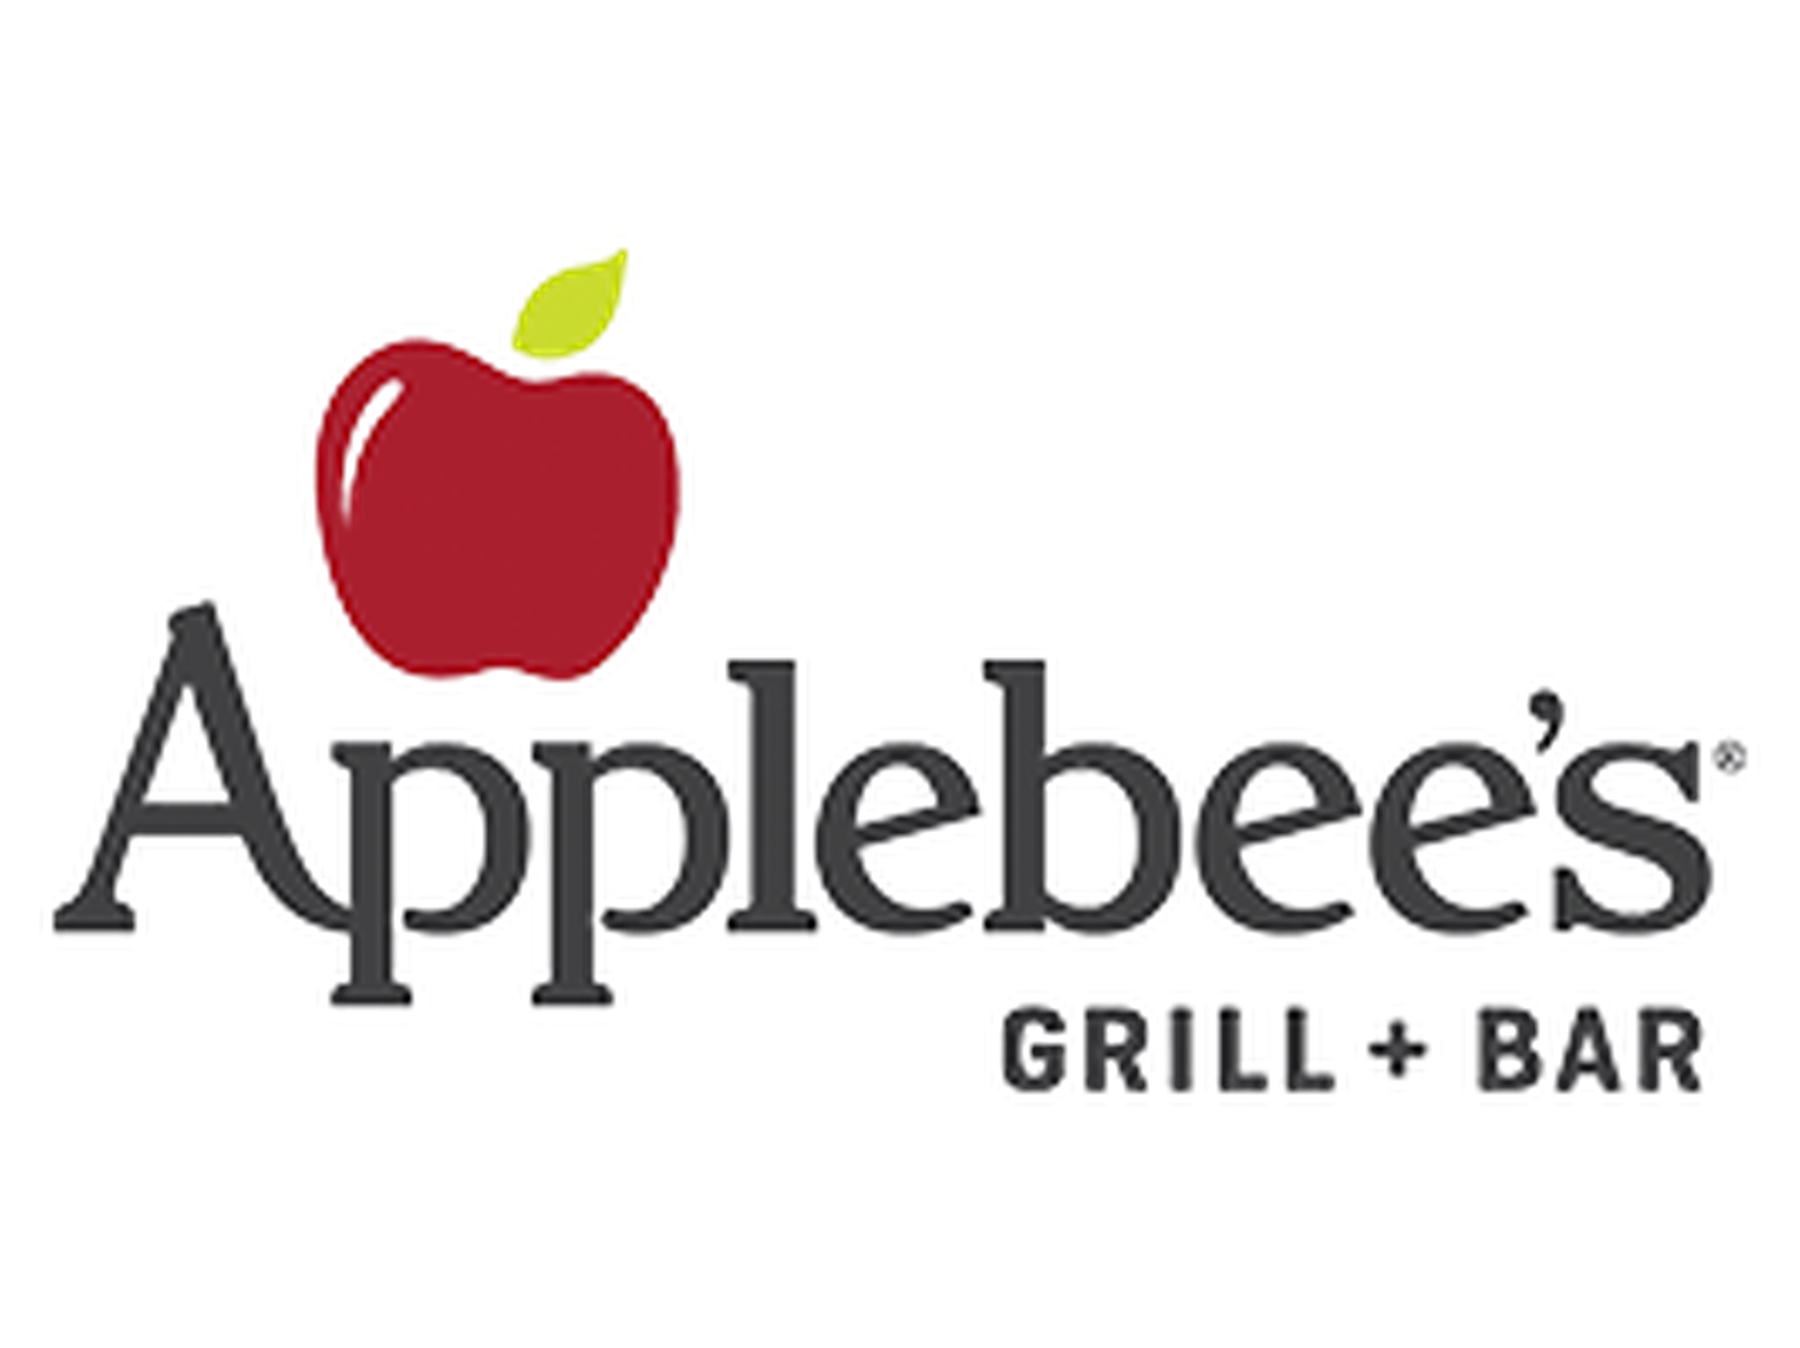 Applebee's Coupons